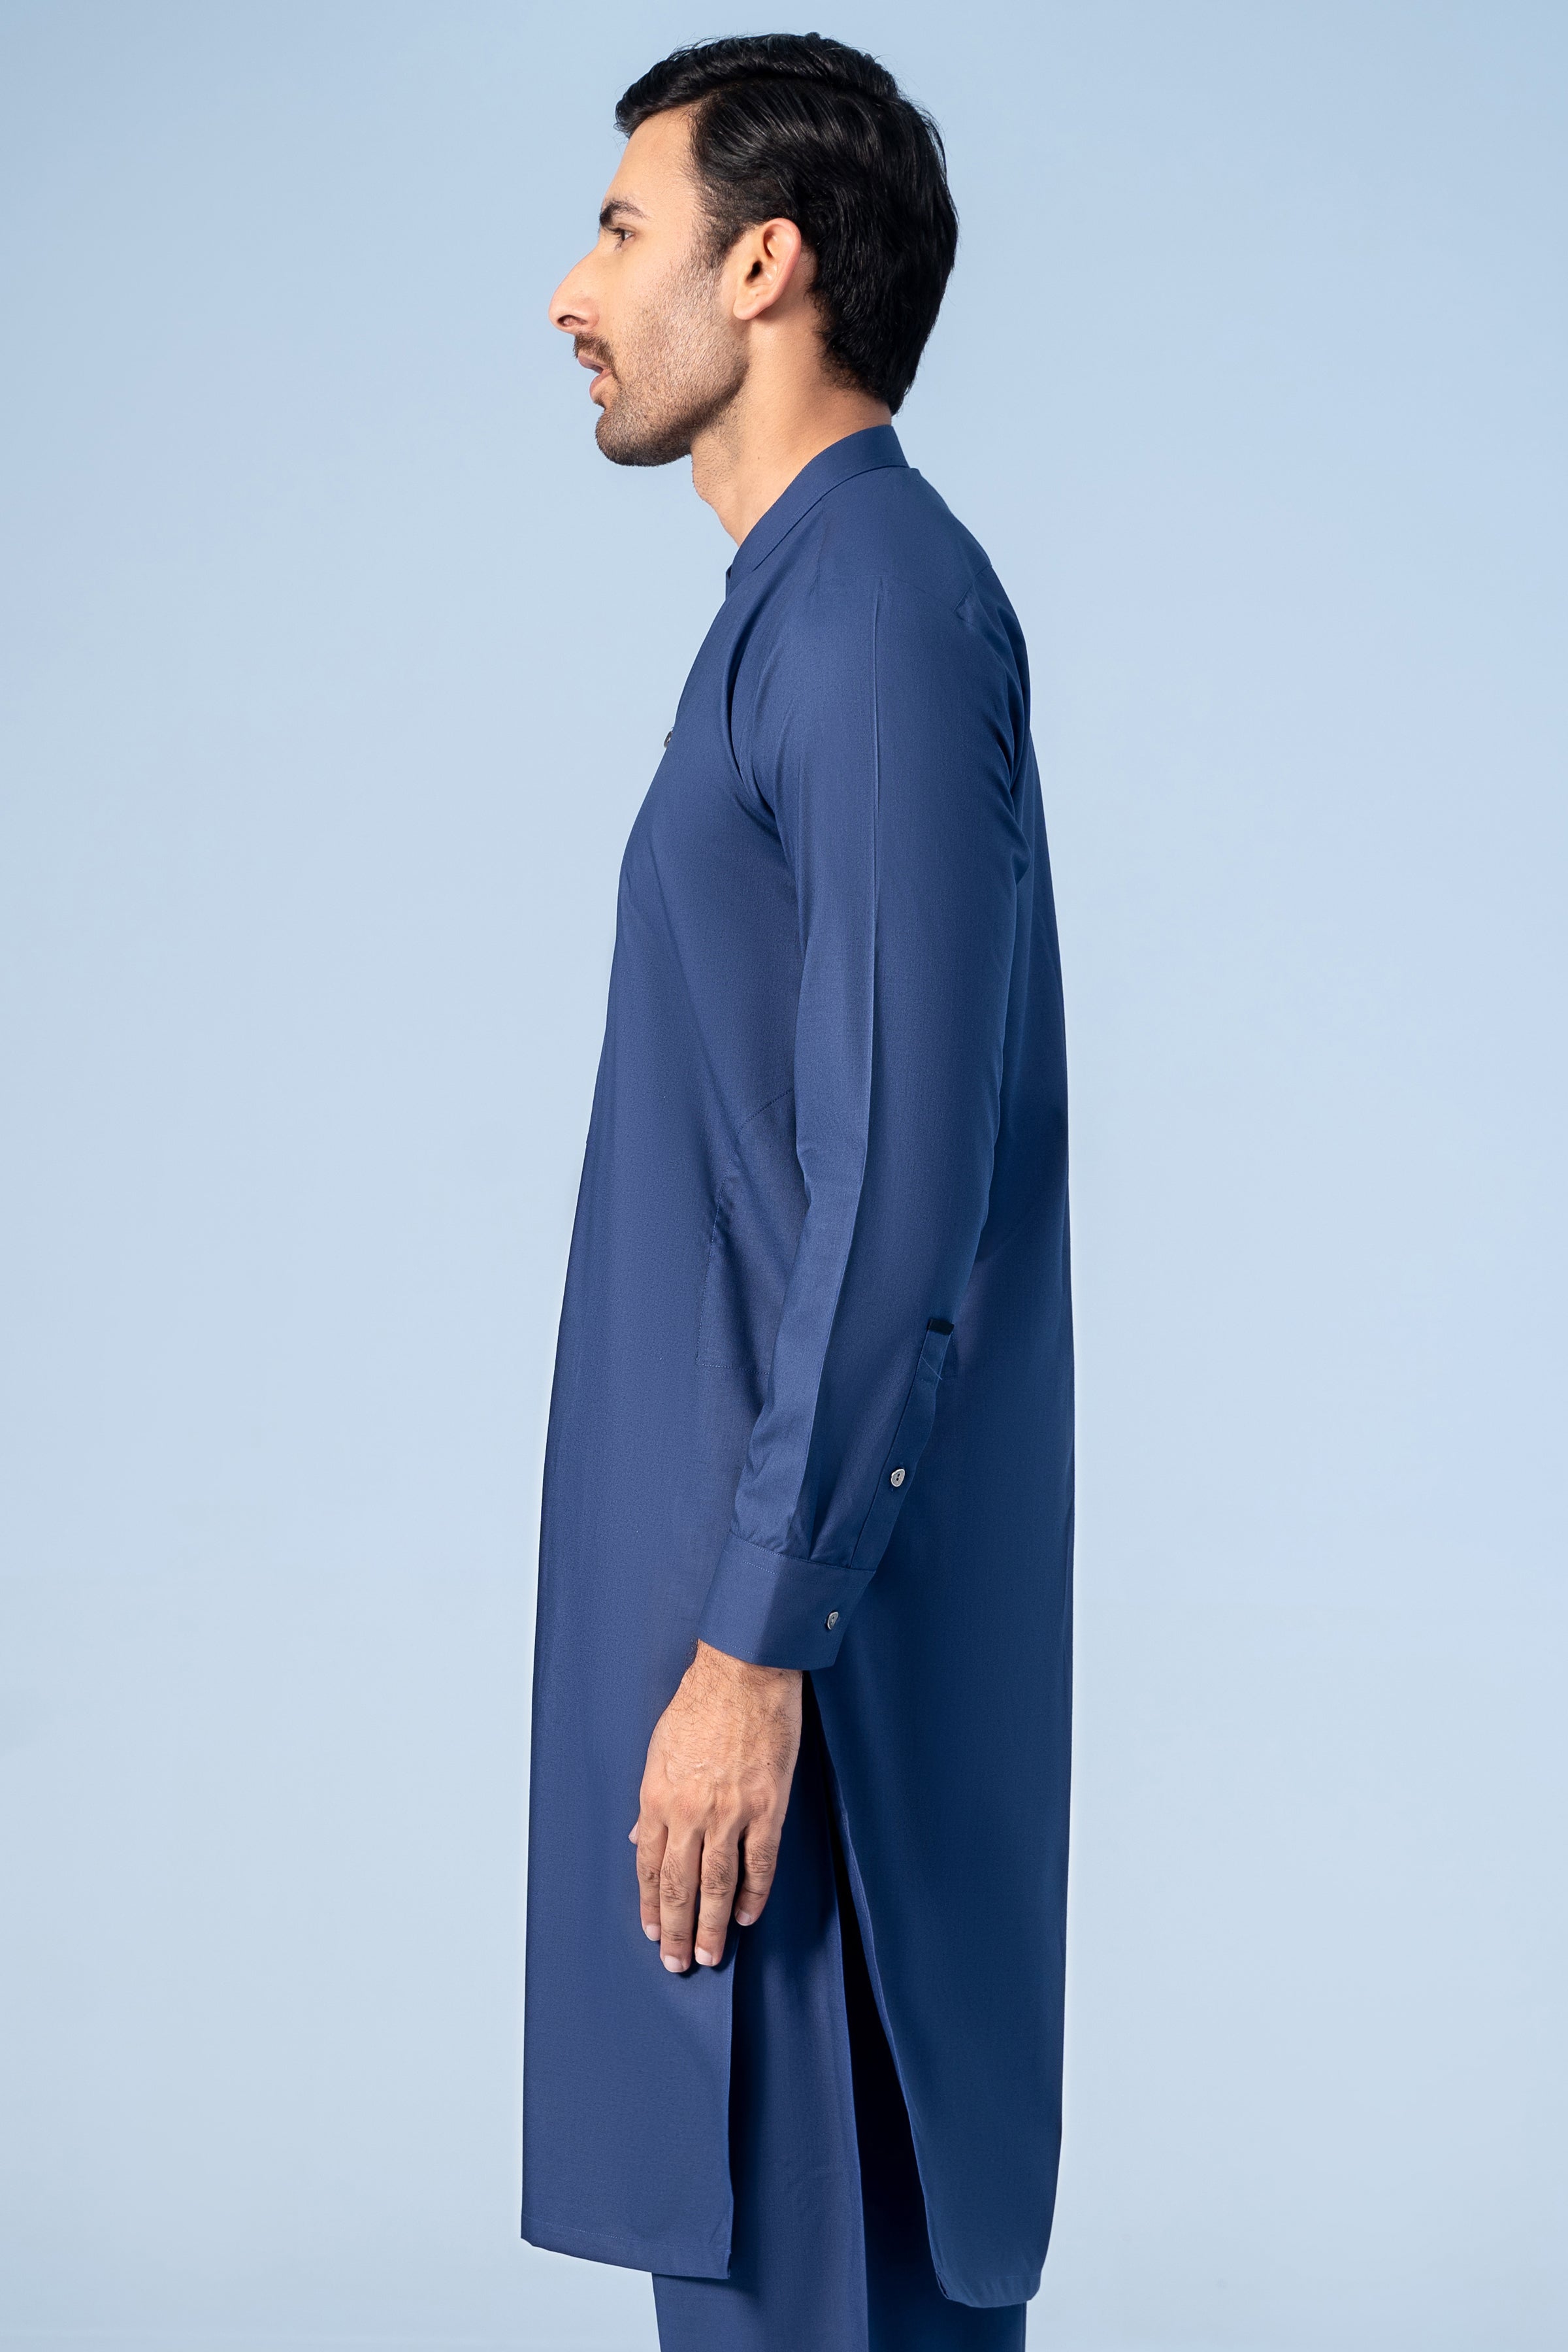 SHALWAR KAMEEZ BLUE - Charcoal Clothing